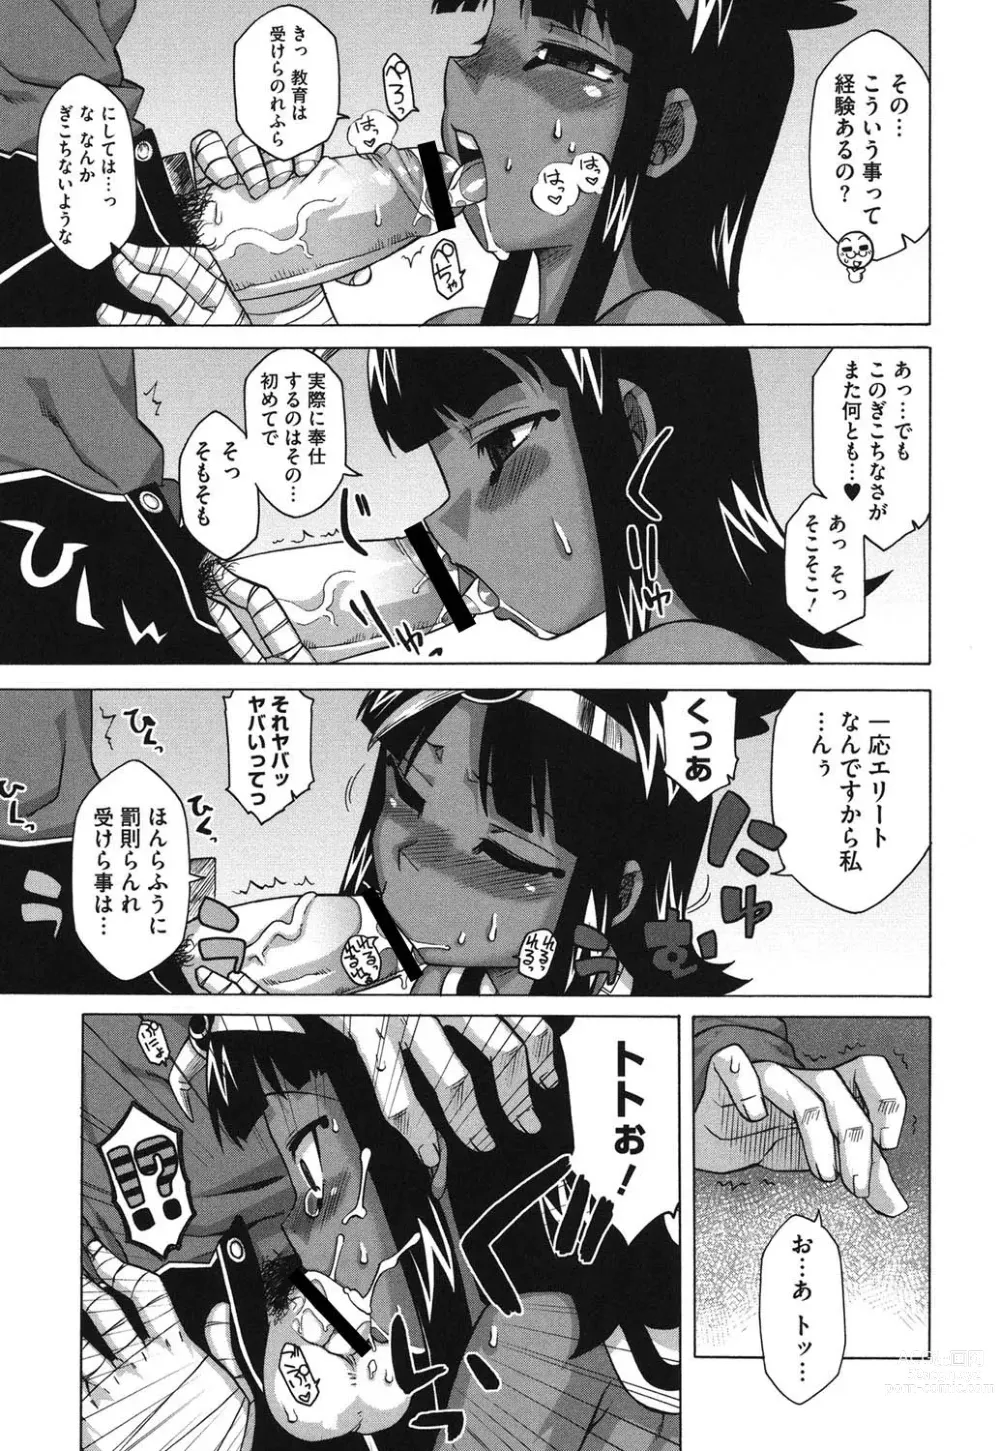 Page 10 of manga Sore wa Rekishi ni Kakanaide!